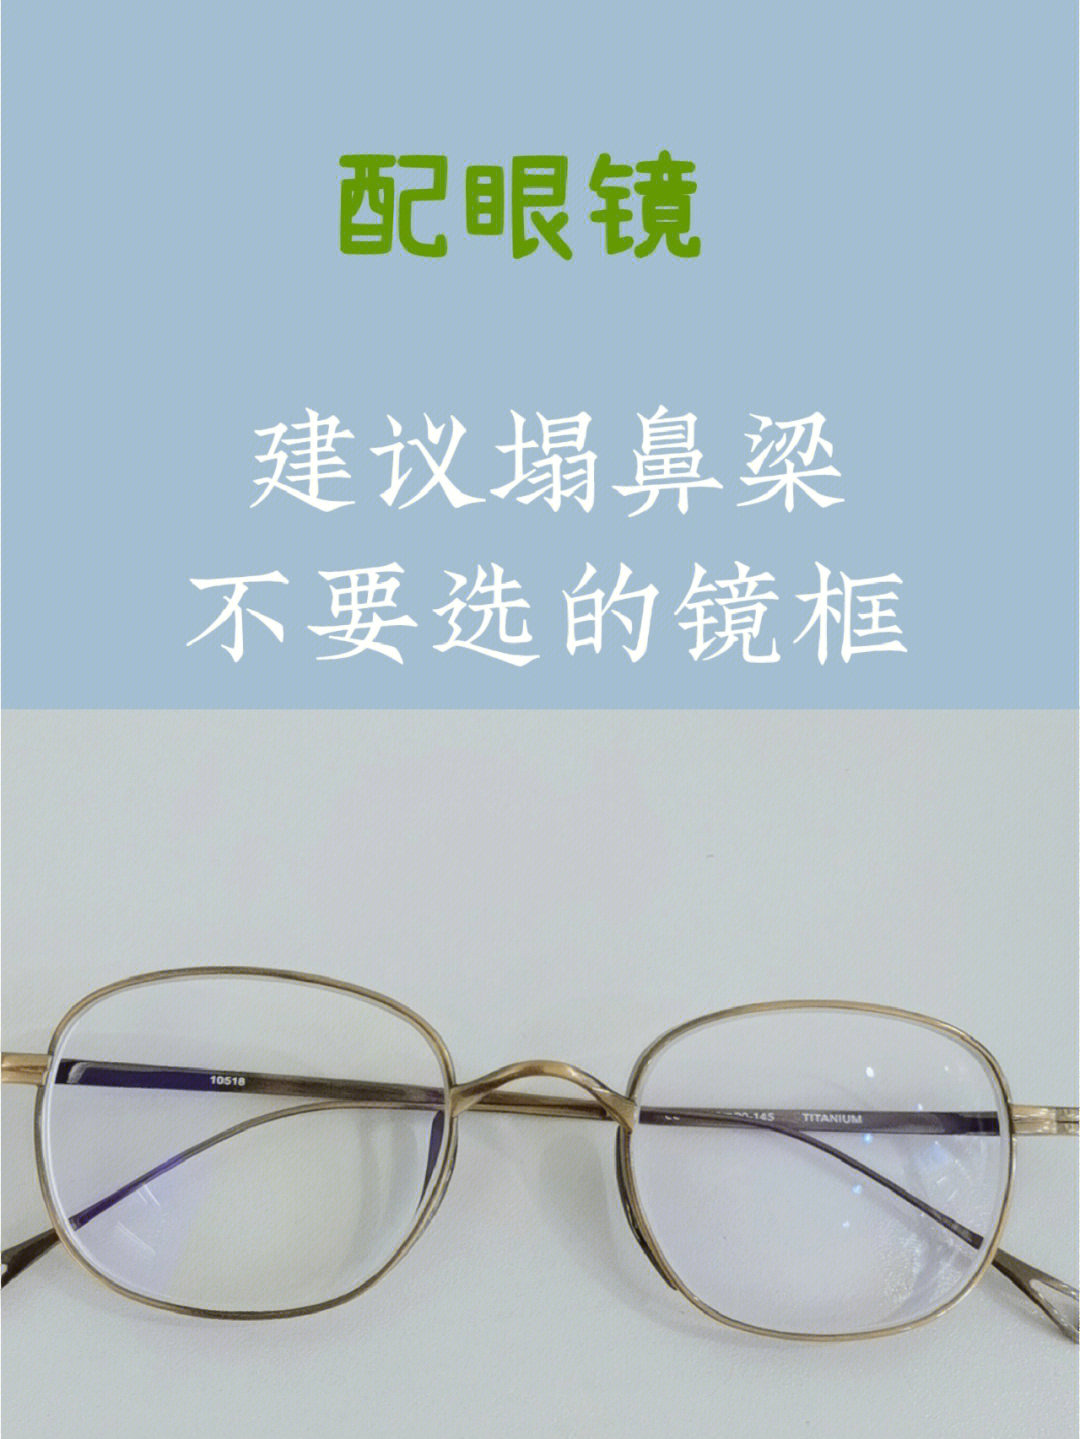 眼镜和鼻梁的故事配图图片